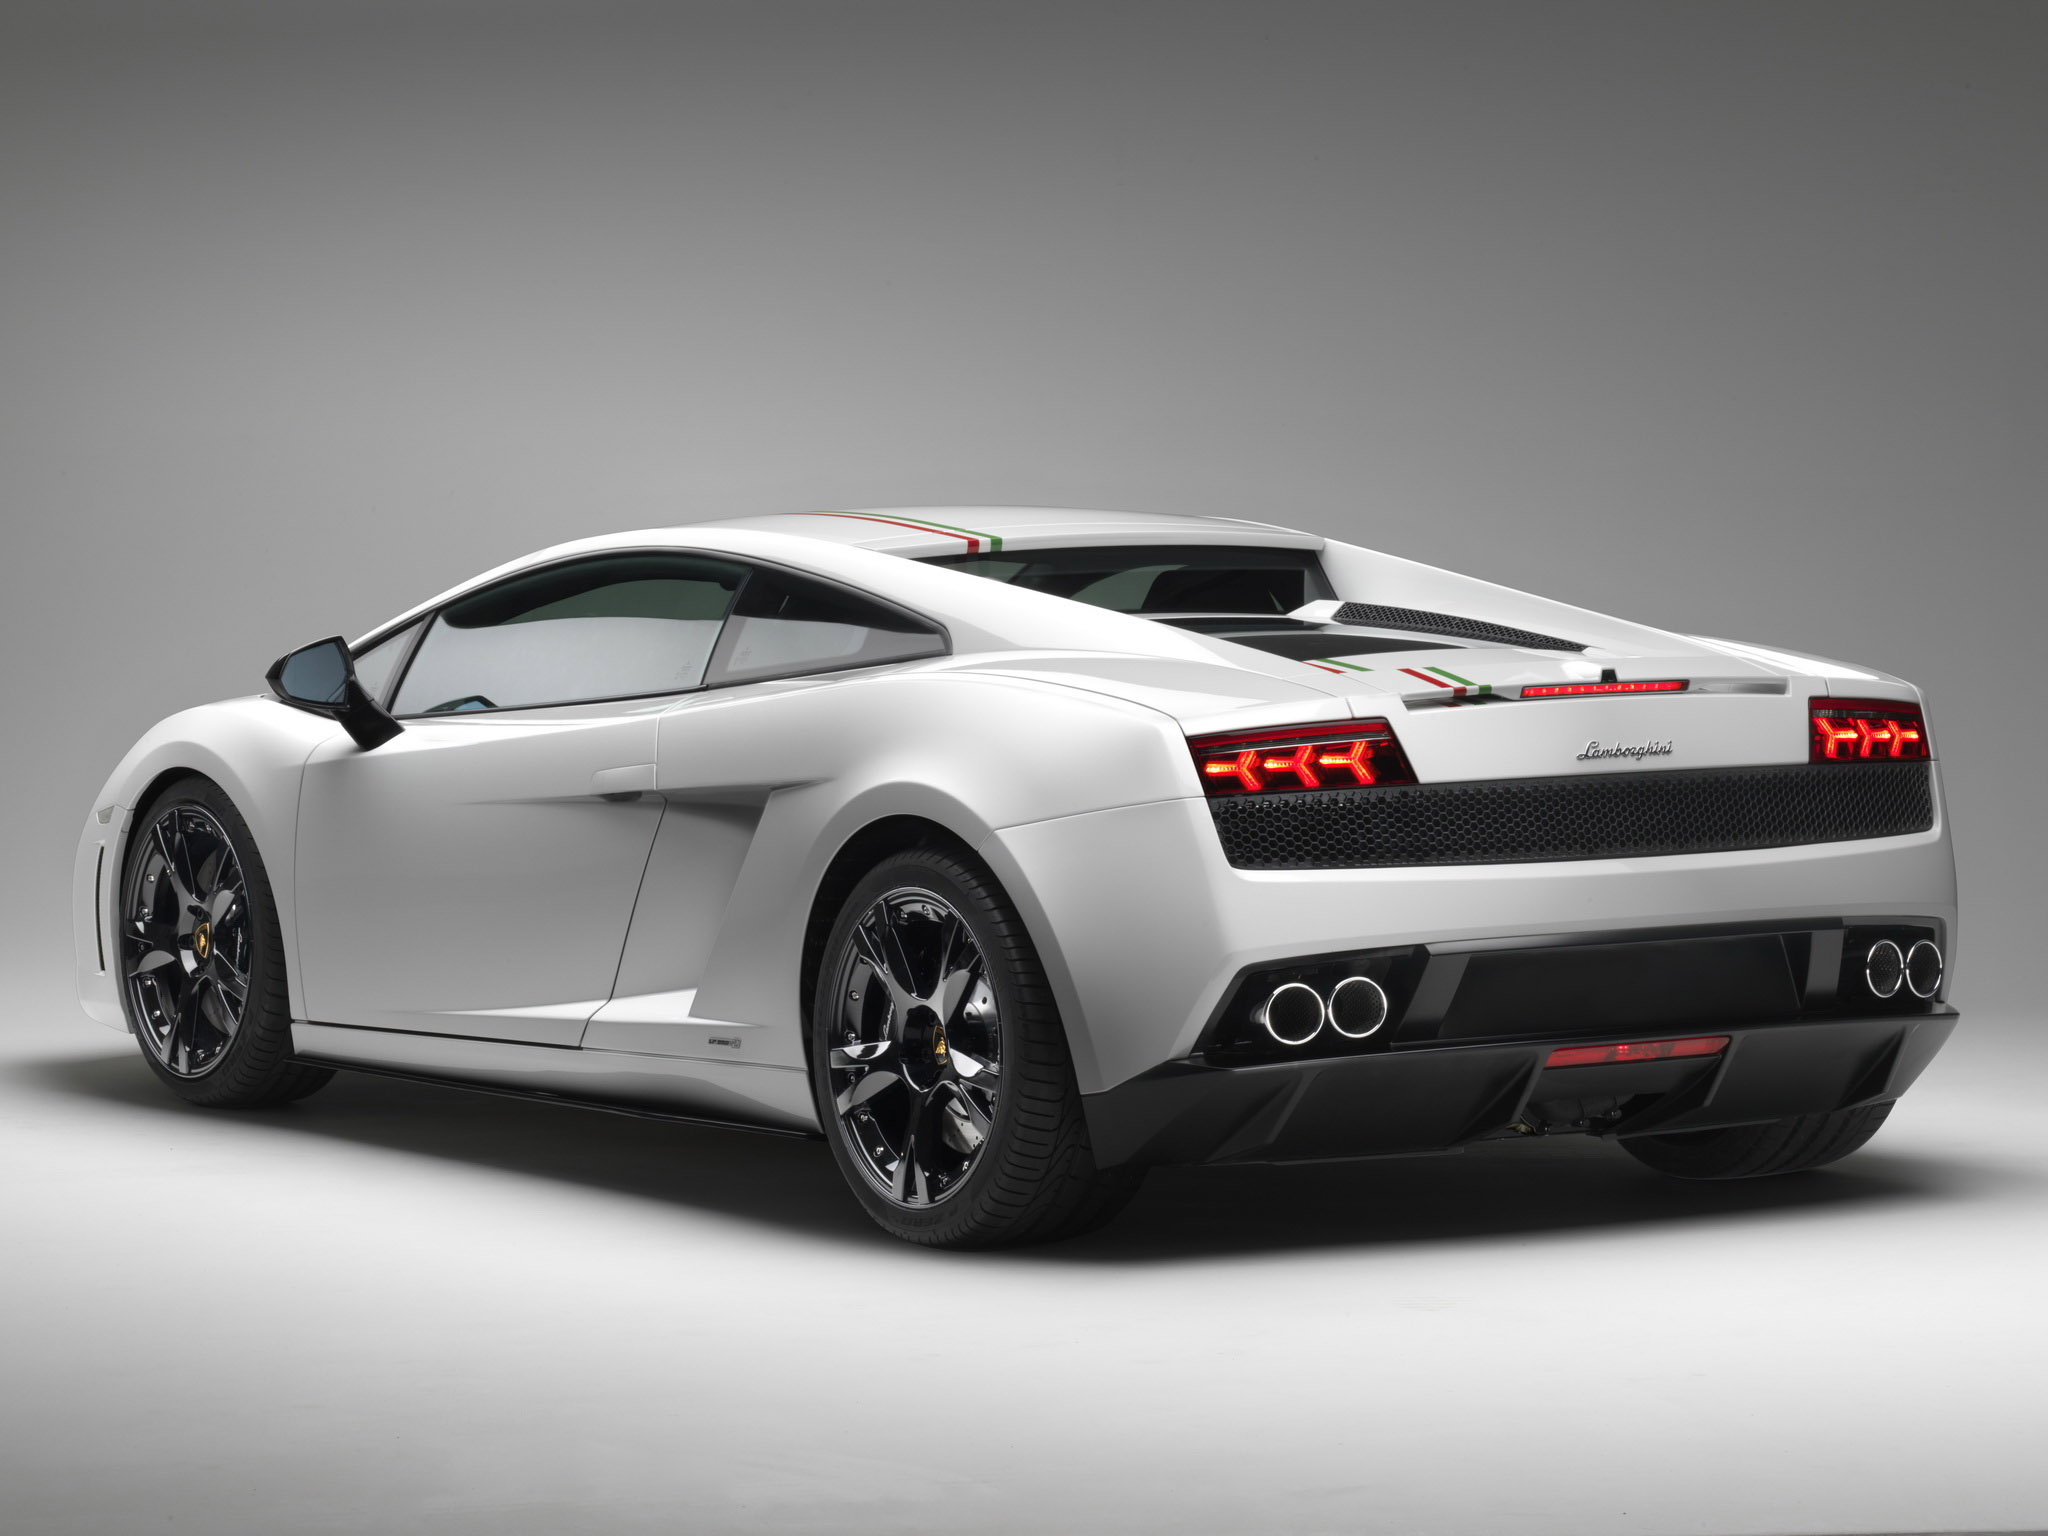 Lamborghini Gallardo LP 550-2 5.2 (550 Hp) Spyder | AutoModels.net